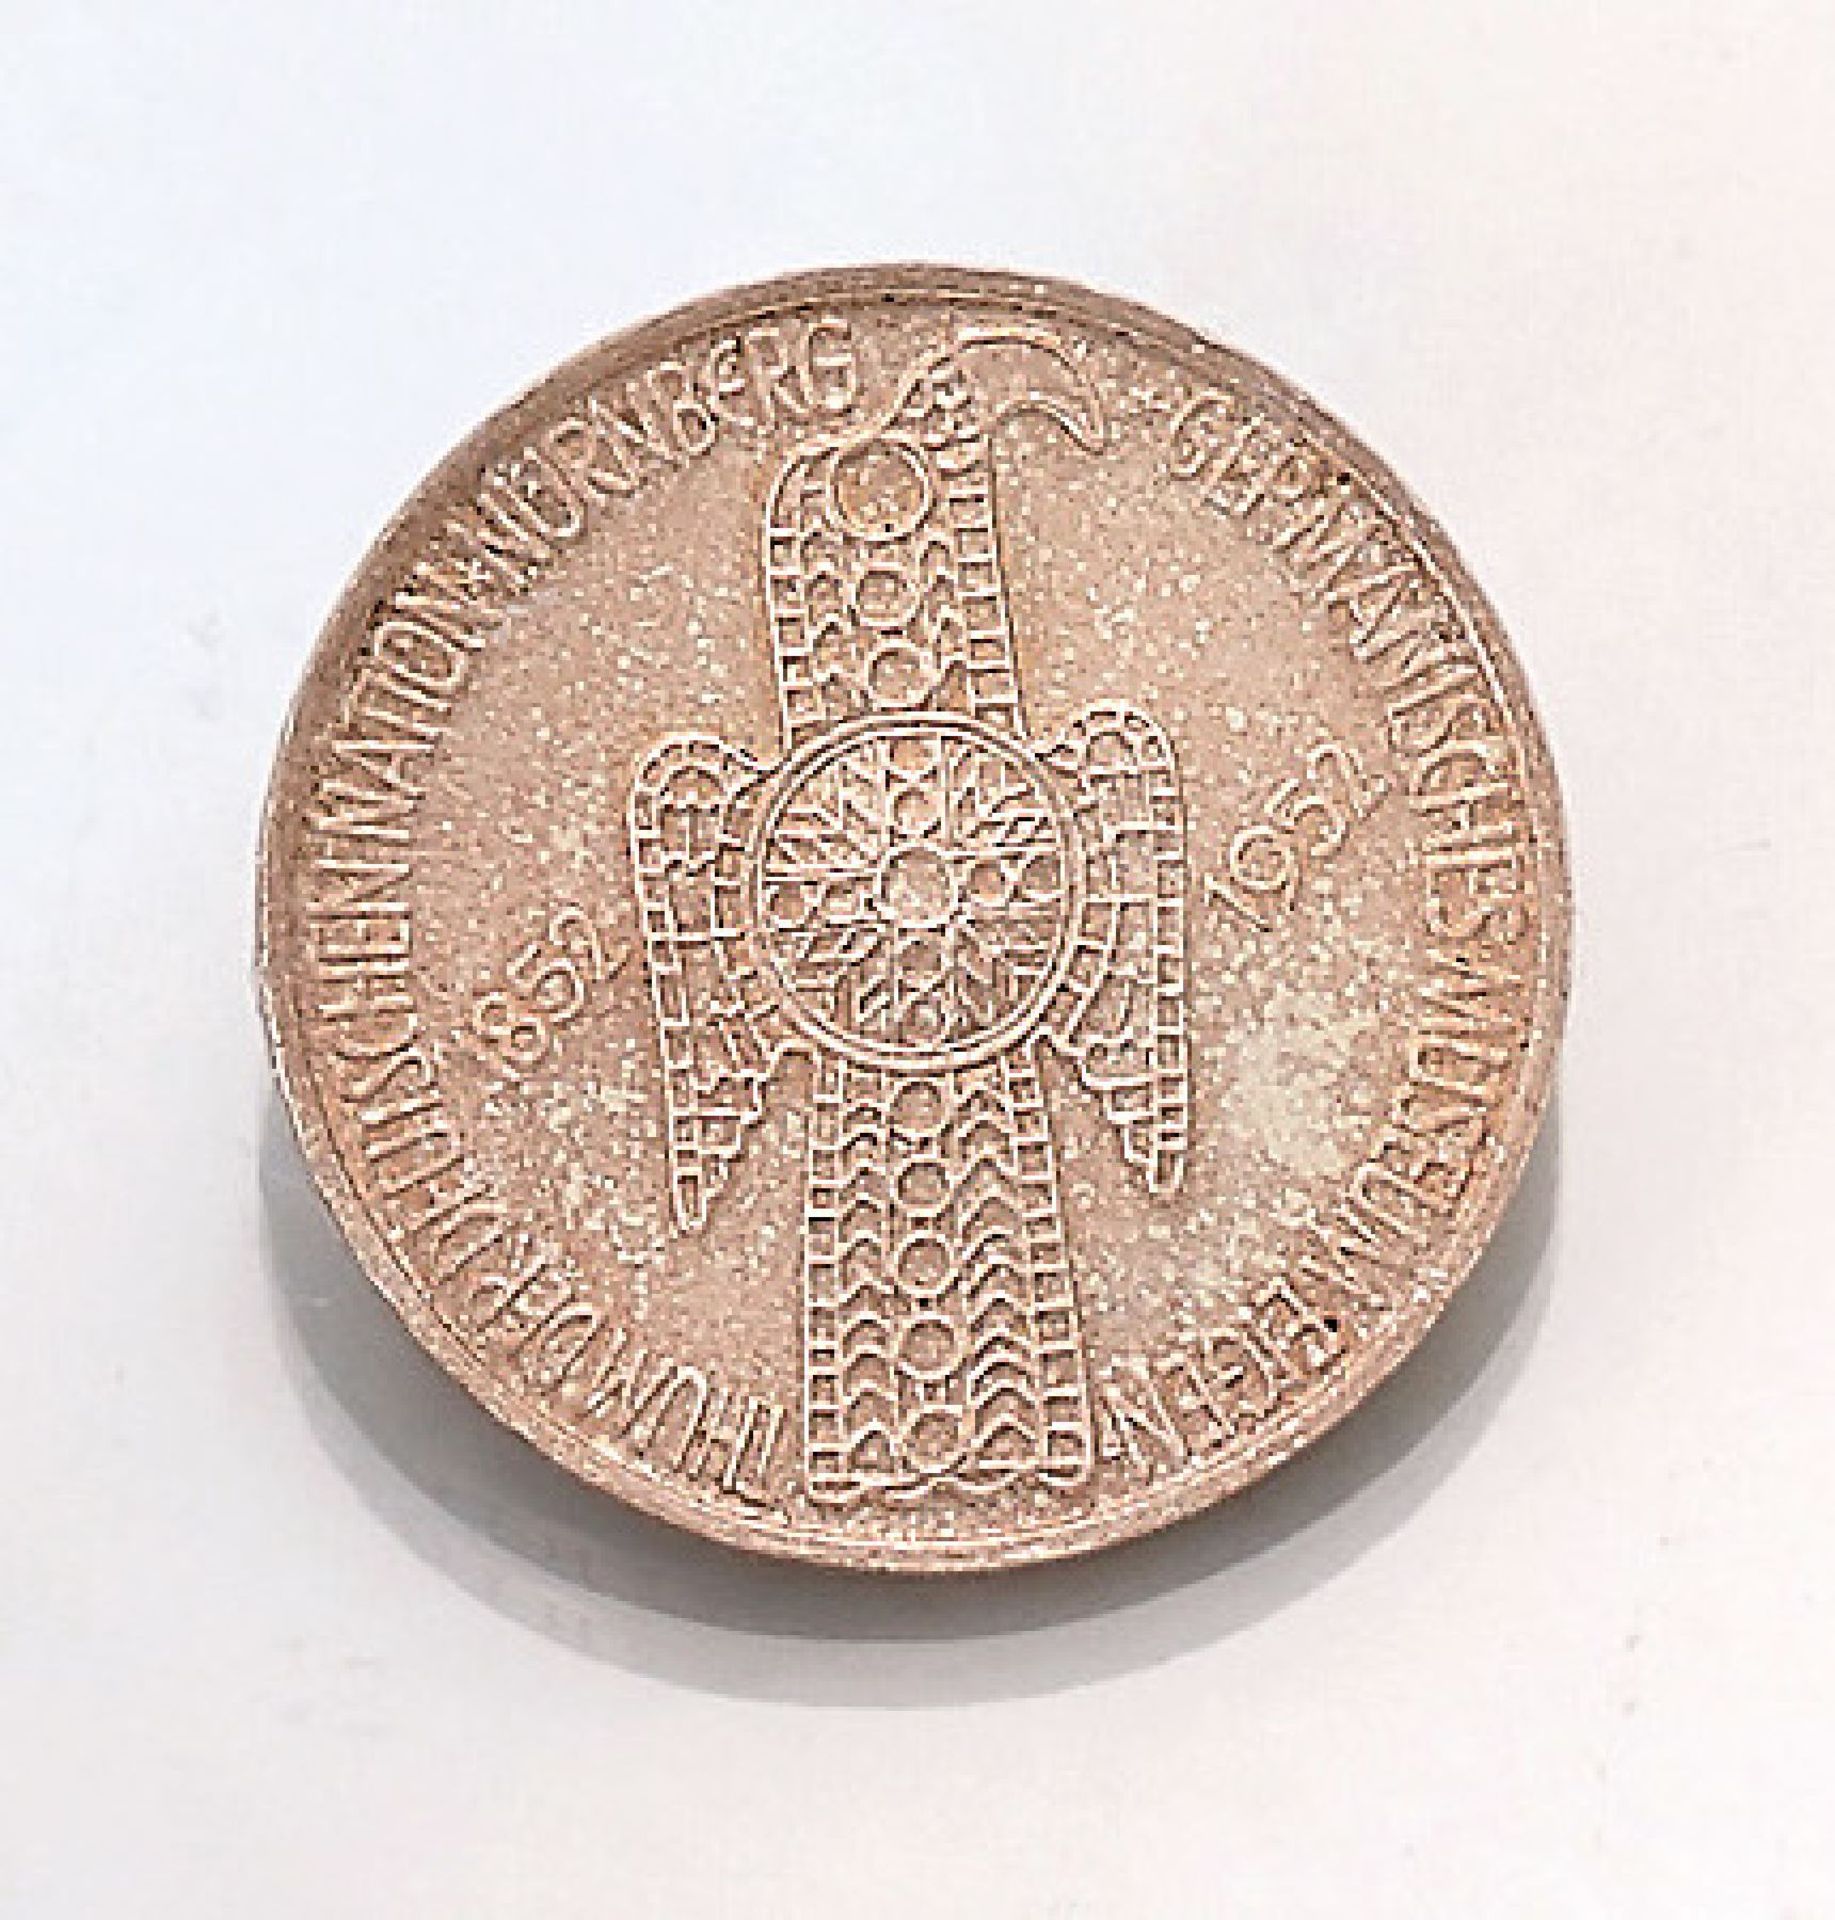 Silbermünze, 5 Mark, Deutschland, 1952, Germanisches Museum Nürnberg, Prägemarke DSilver coin, 5